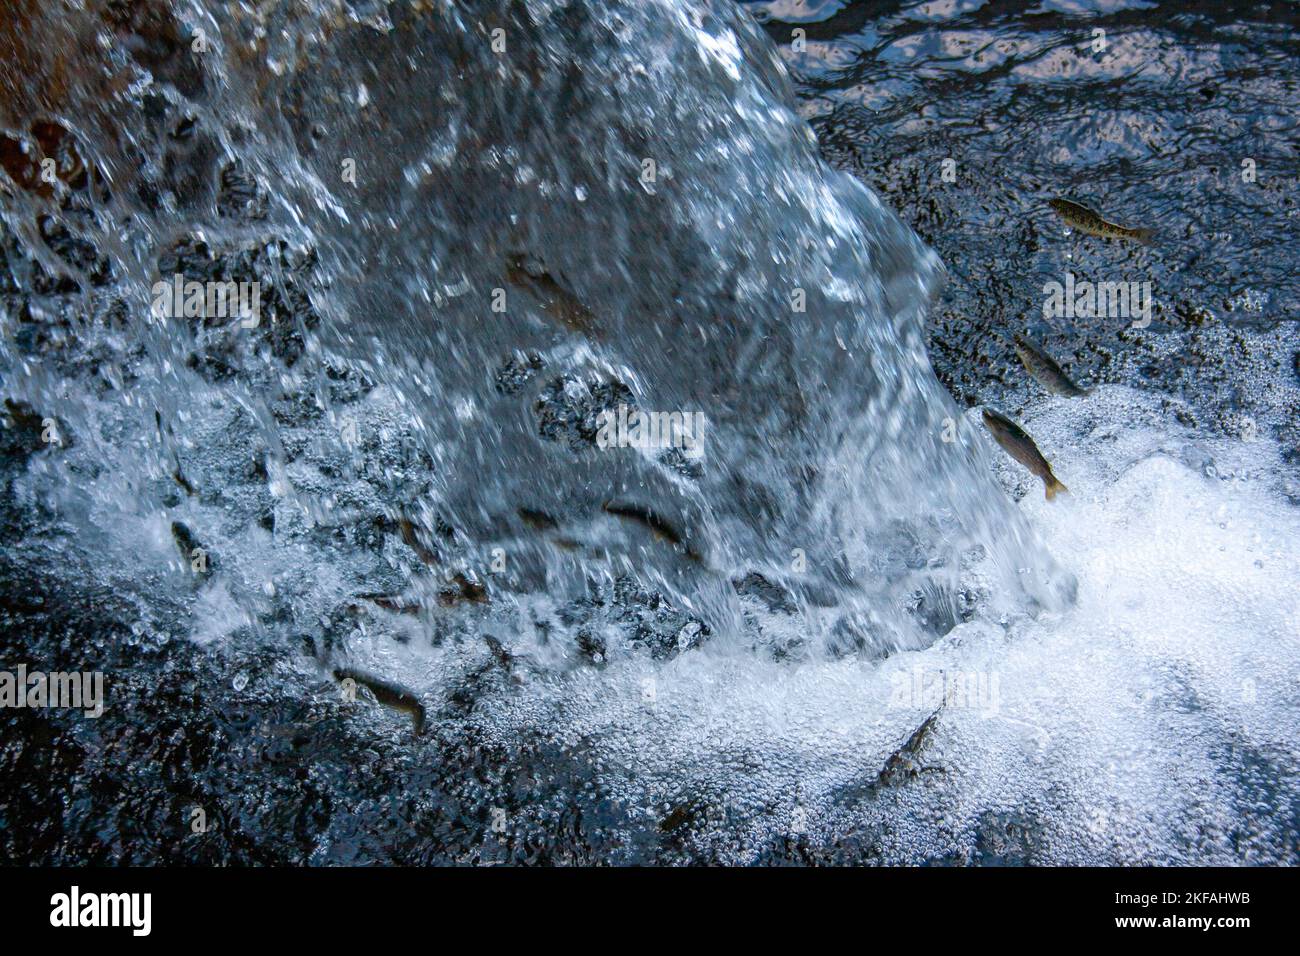 Truite sautant l'eau en cascade dans un ruisseau photographié dans les montagnes du Taurus, golfe d'Antalya. Péninsule anatolienne, Anatolie, Turquie Banque D'Images